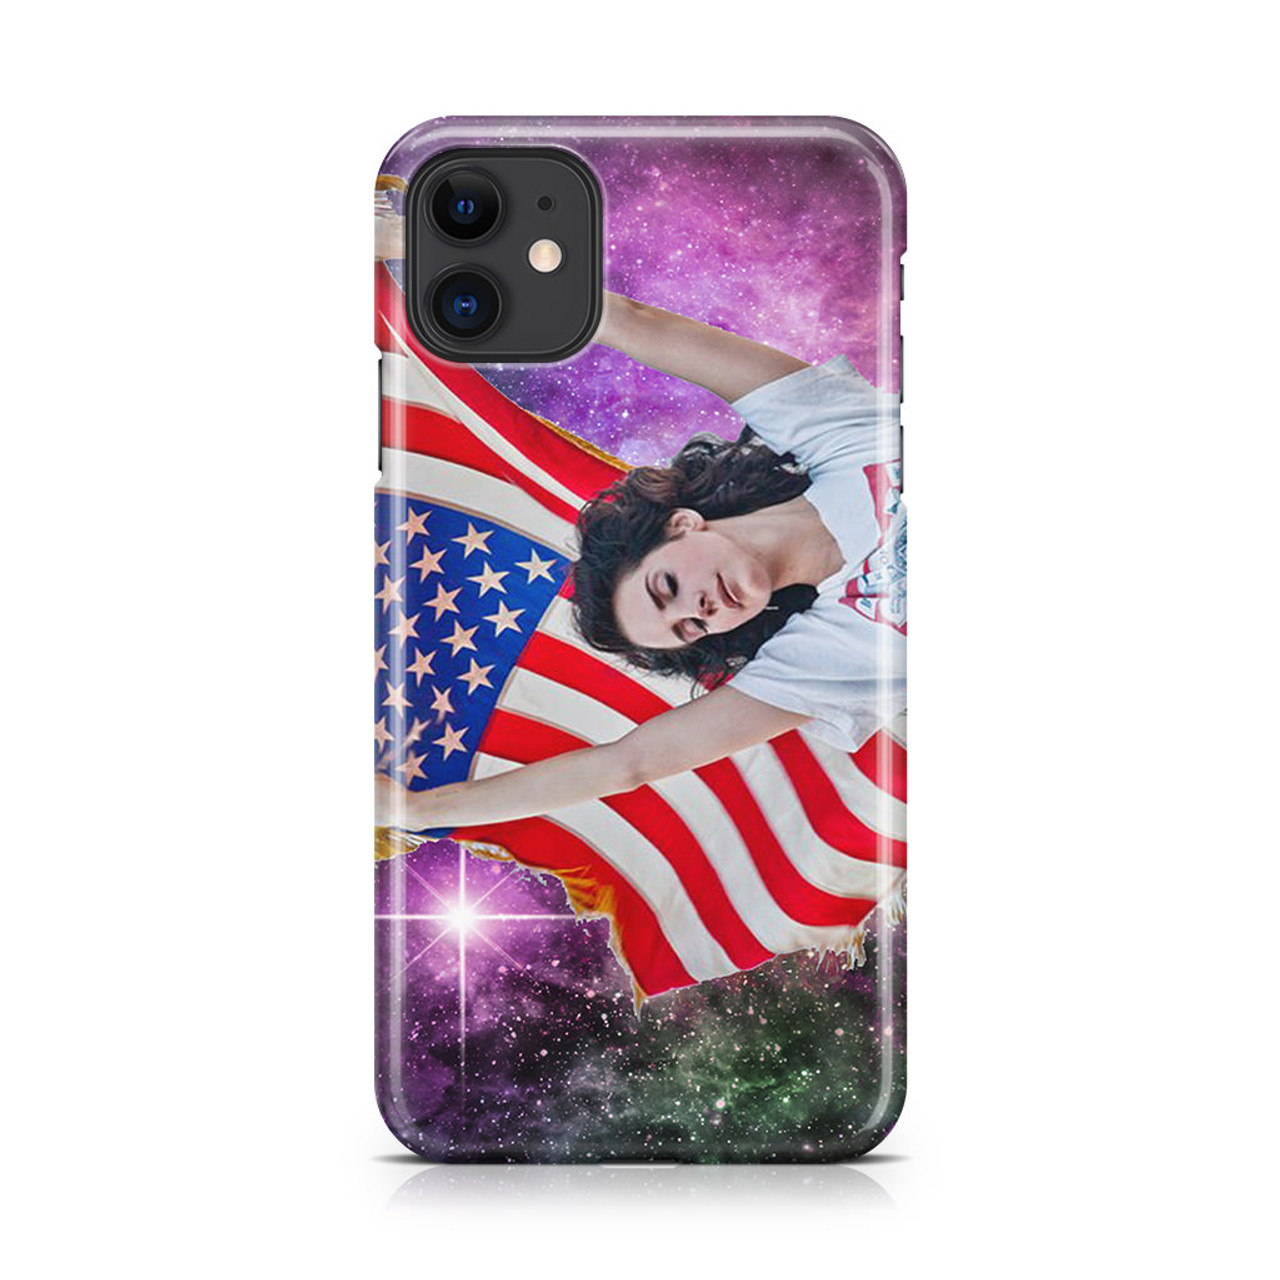 USA on Nebula Nike Lana Del Rey iPhone 11 Case - CASESHUNTER